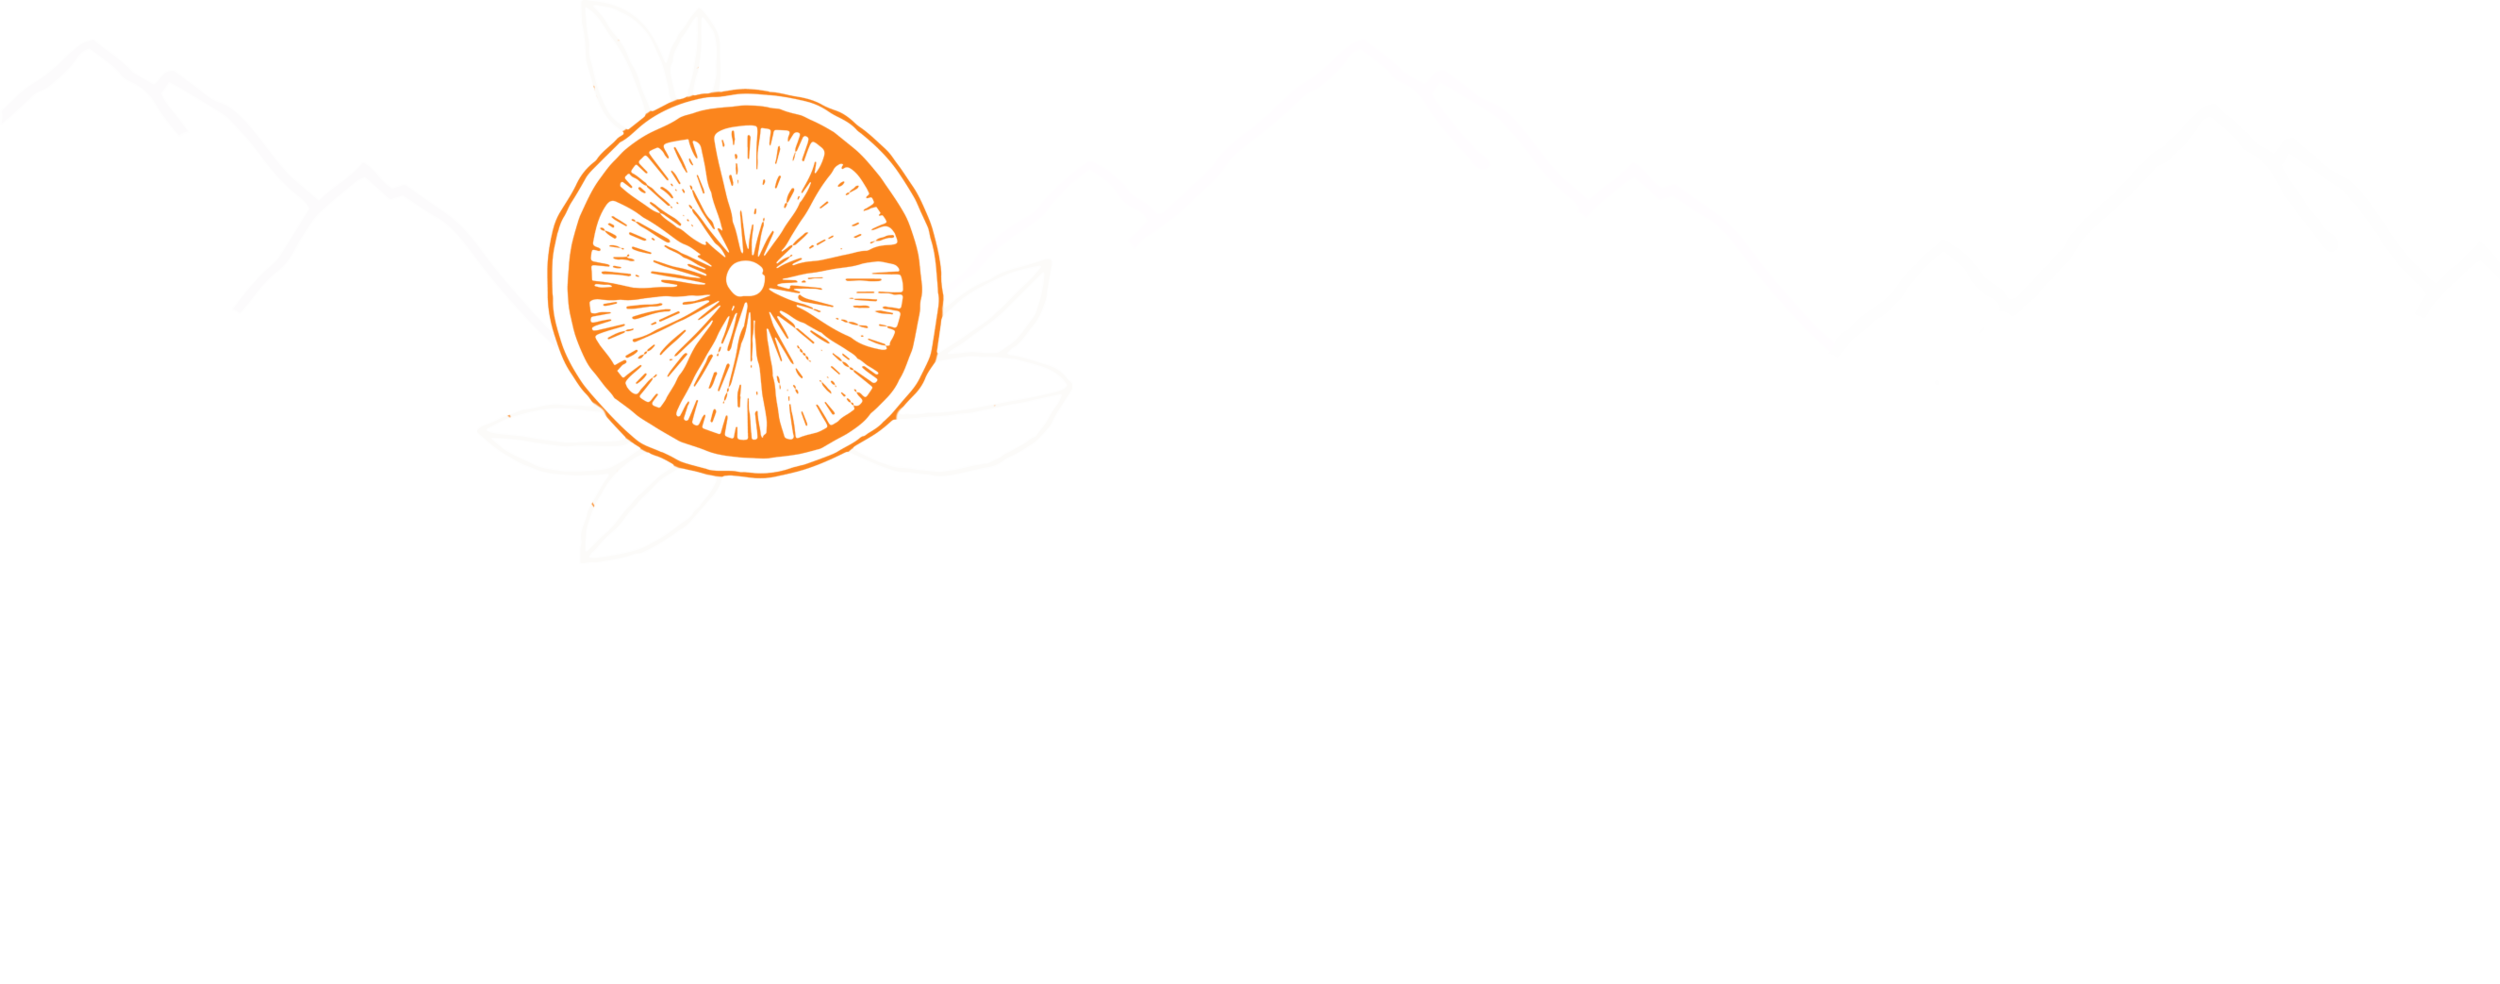 Wild Klementine ◇ Travel - Food - Drink - Art